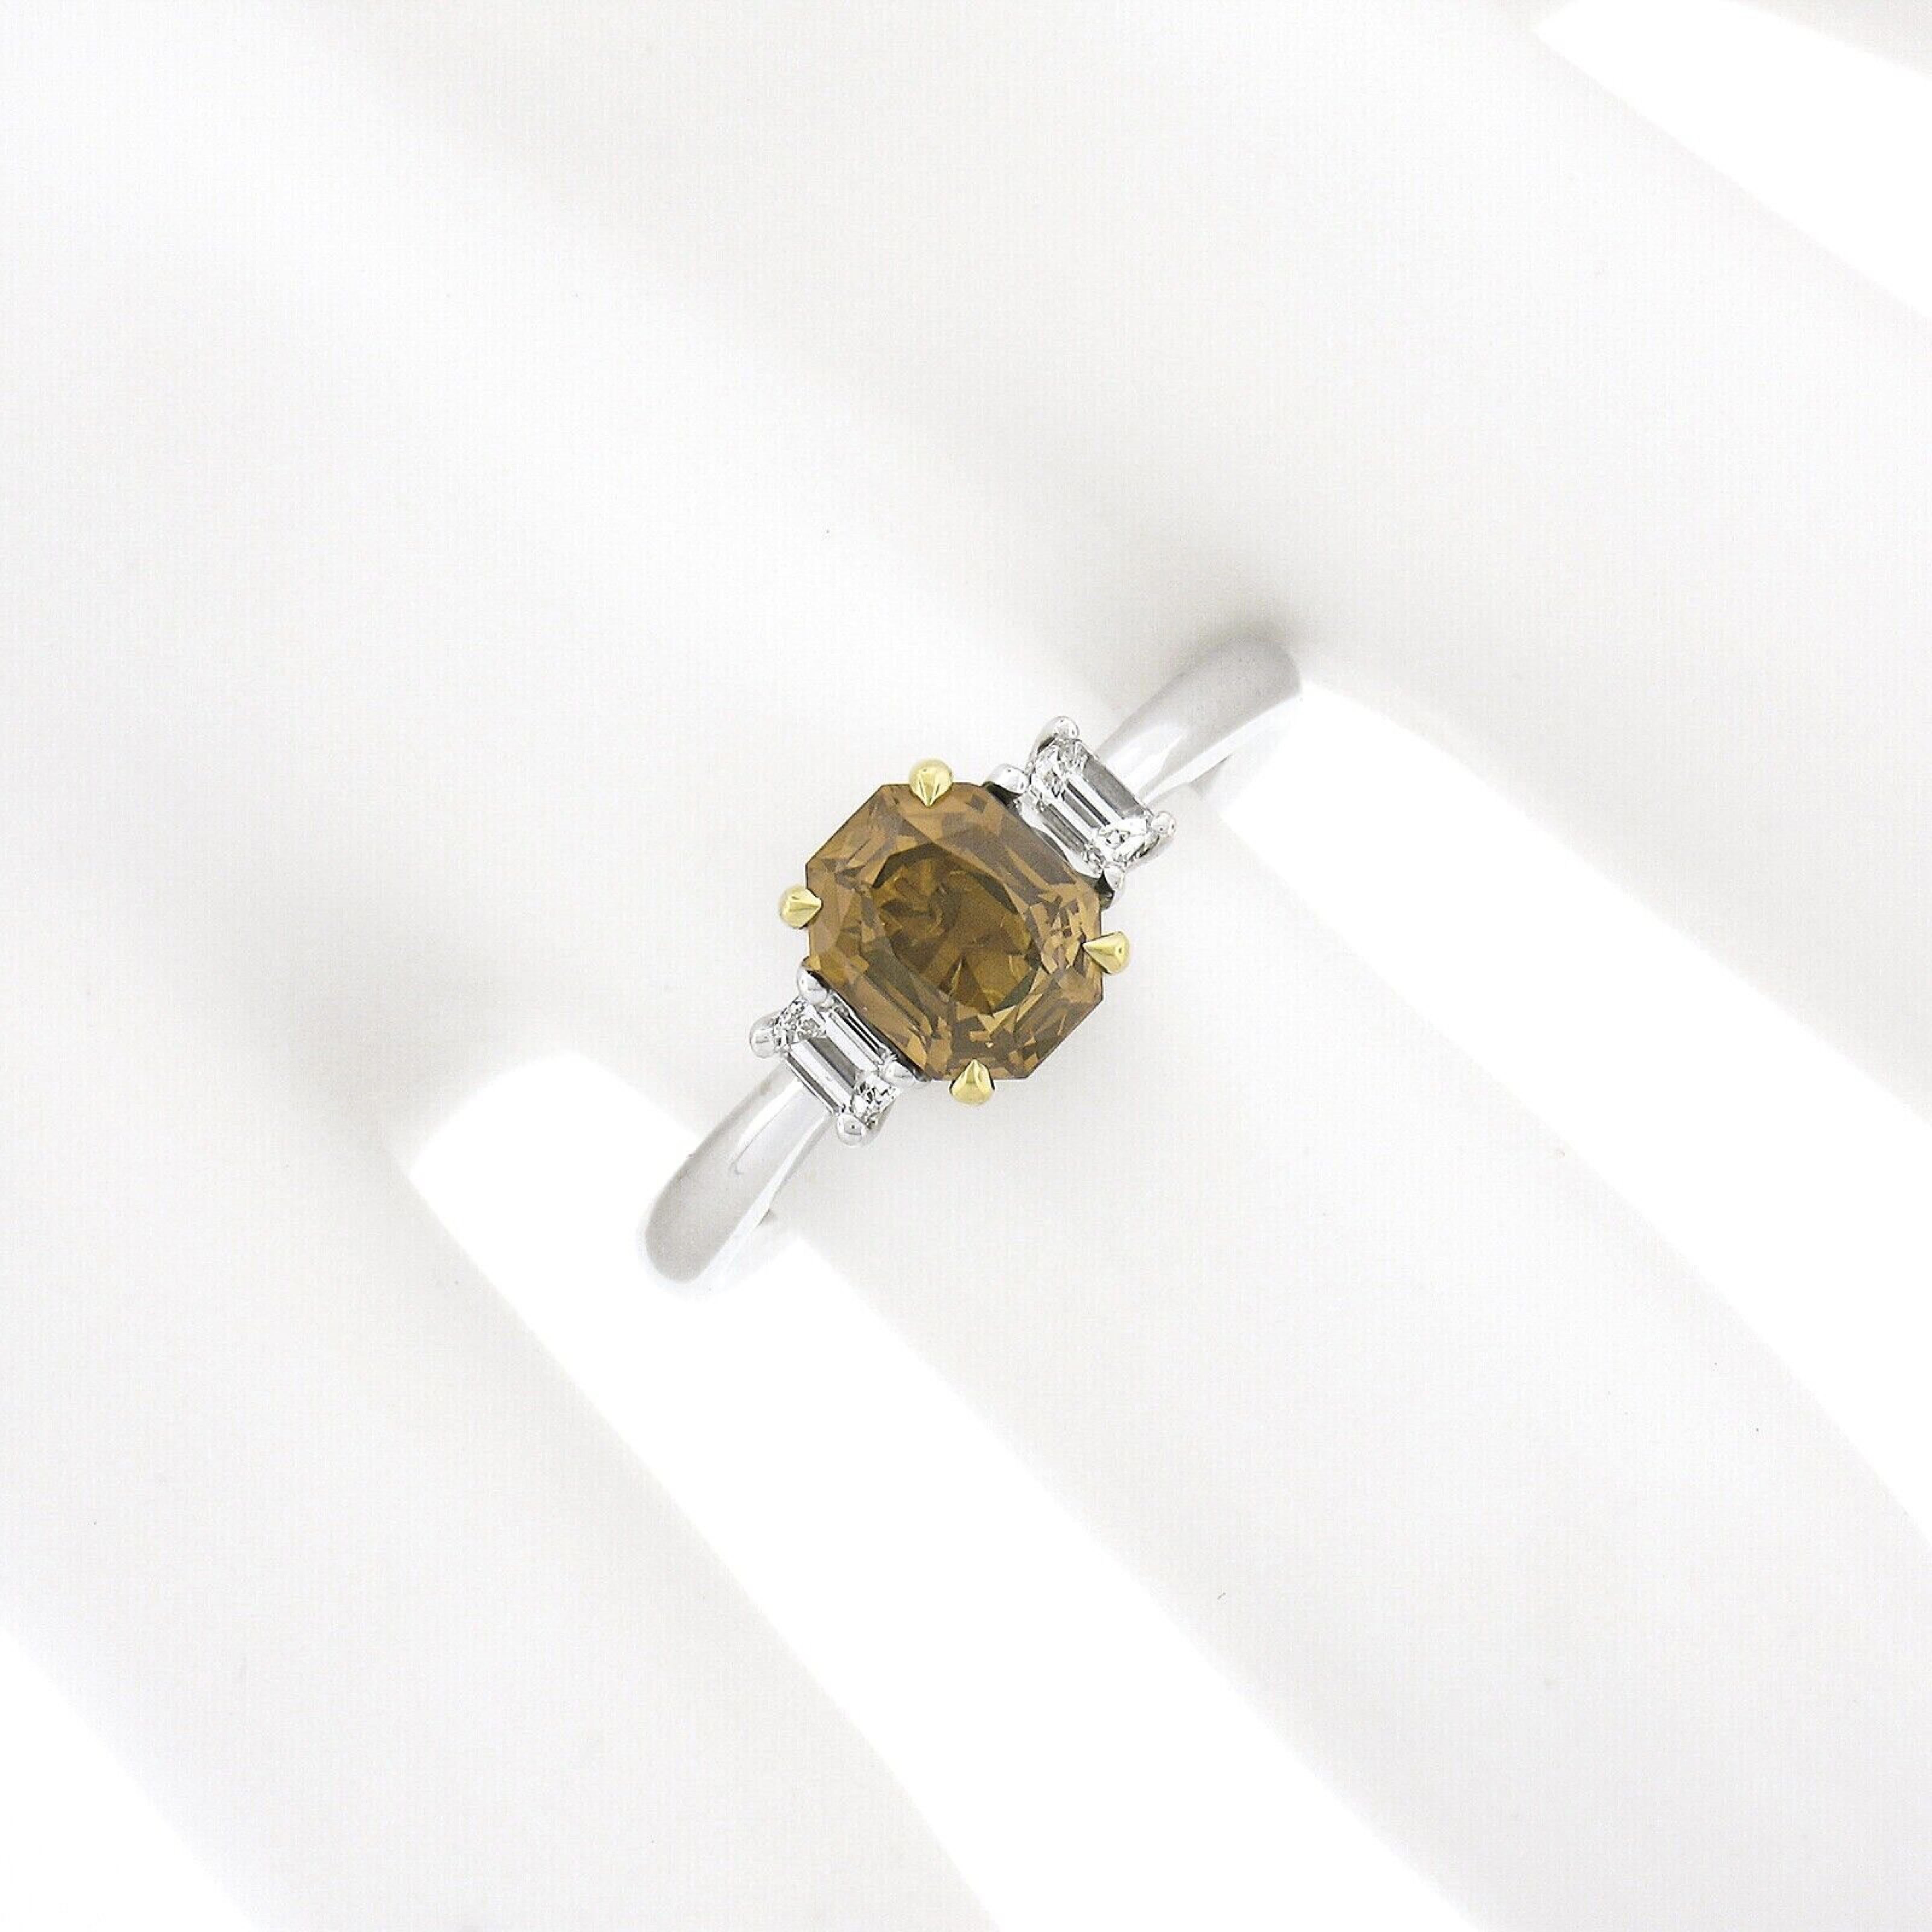 Nous vous présentons ici une fascinante bague en alexandrite et diamant, récemment réalisée en or blanc et jaune 18 carats. Elle présente une alexandrite naturelle à couper le souffle, certifiée par le GIA, qui change de couleur et qui est pleine de